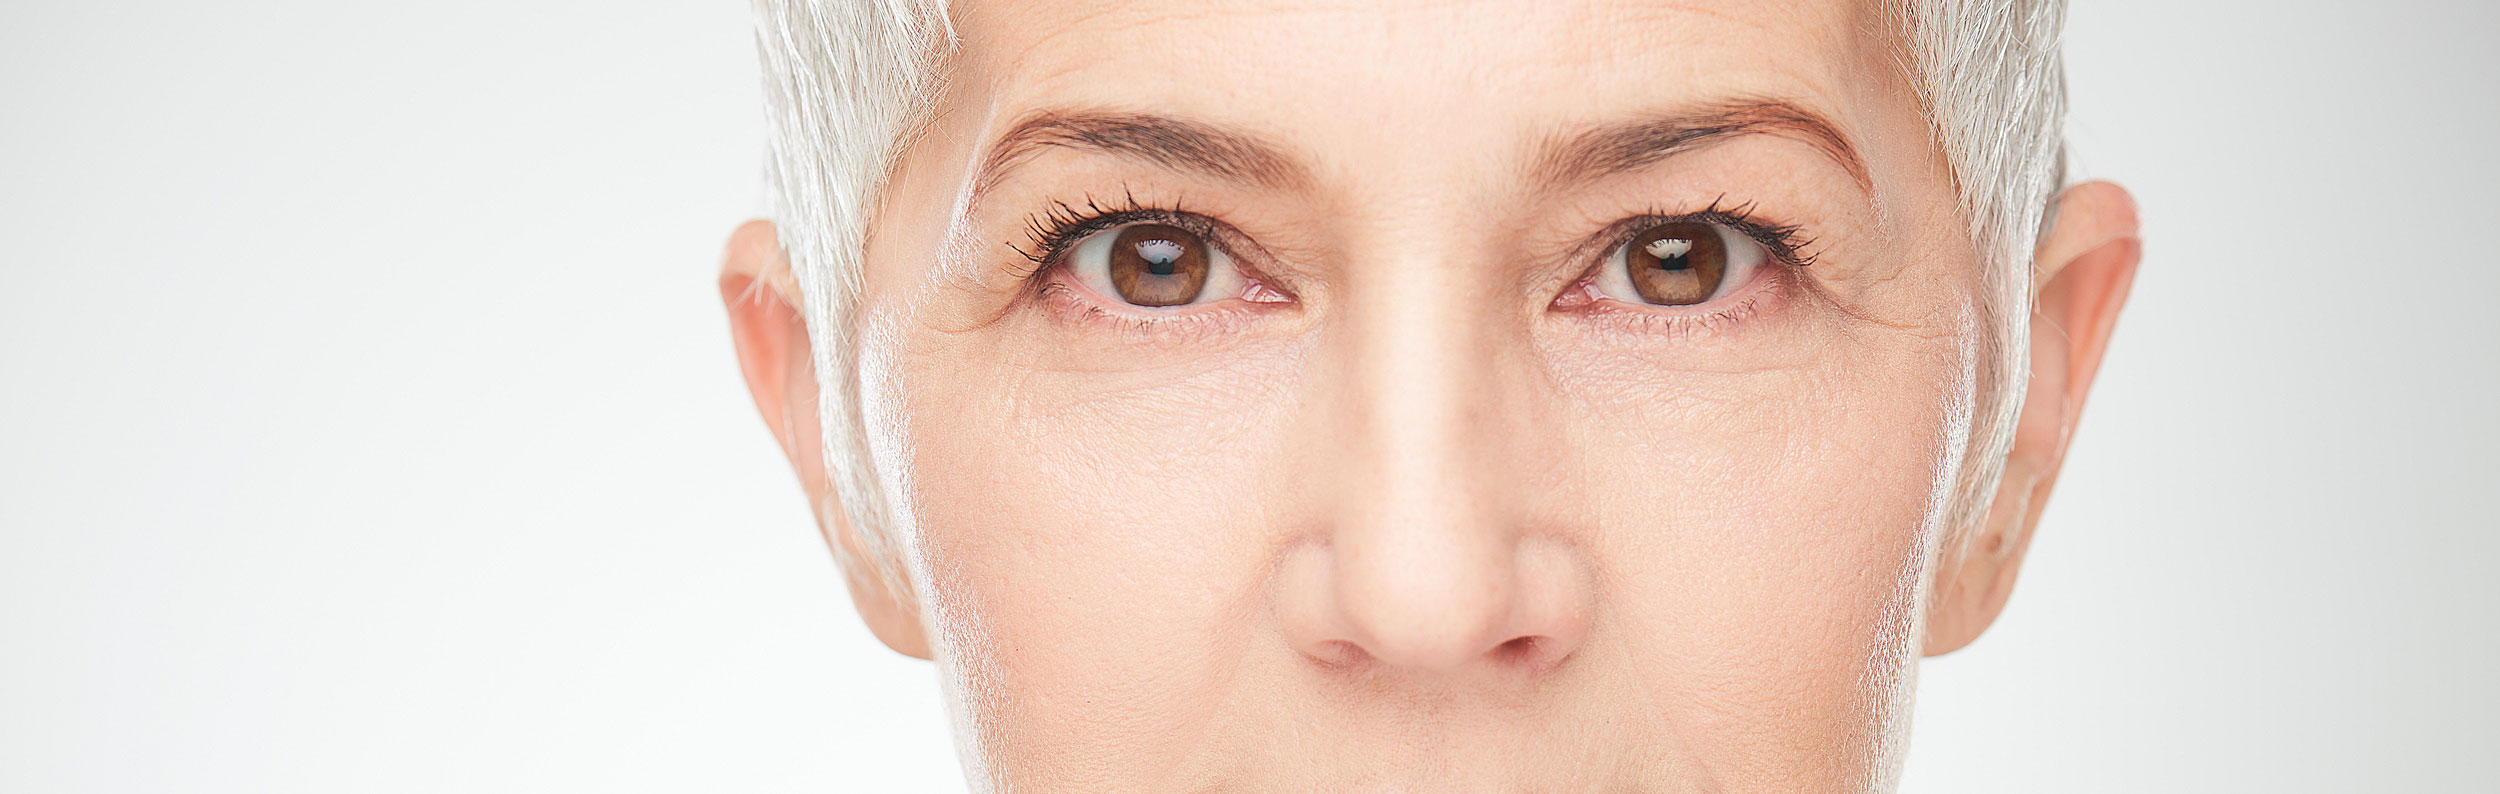 facial surgery for older women